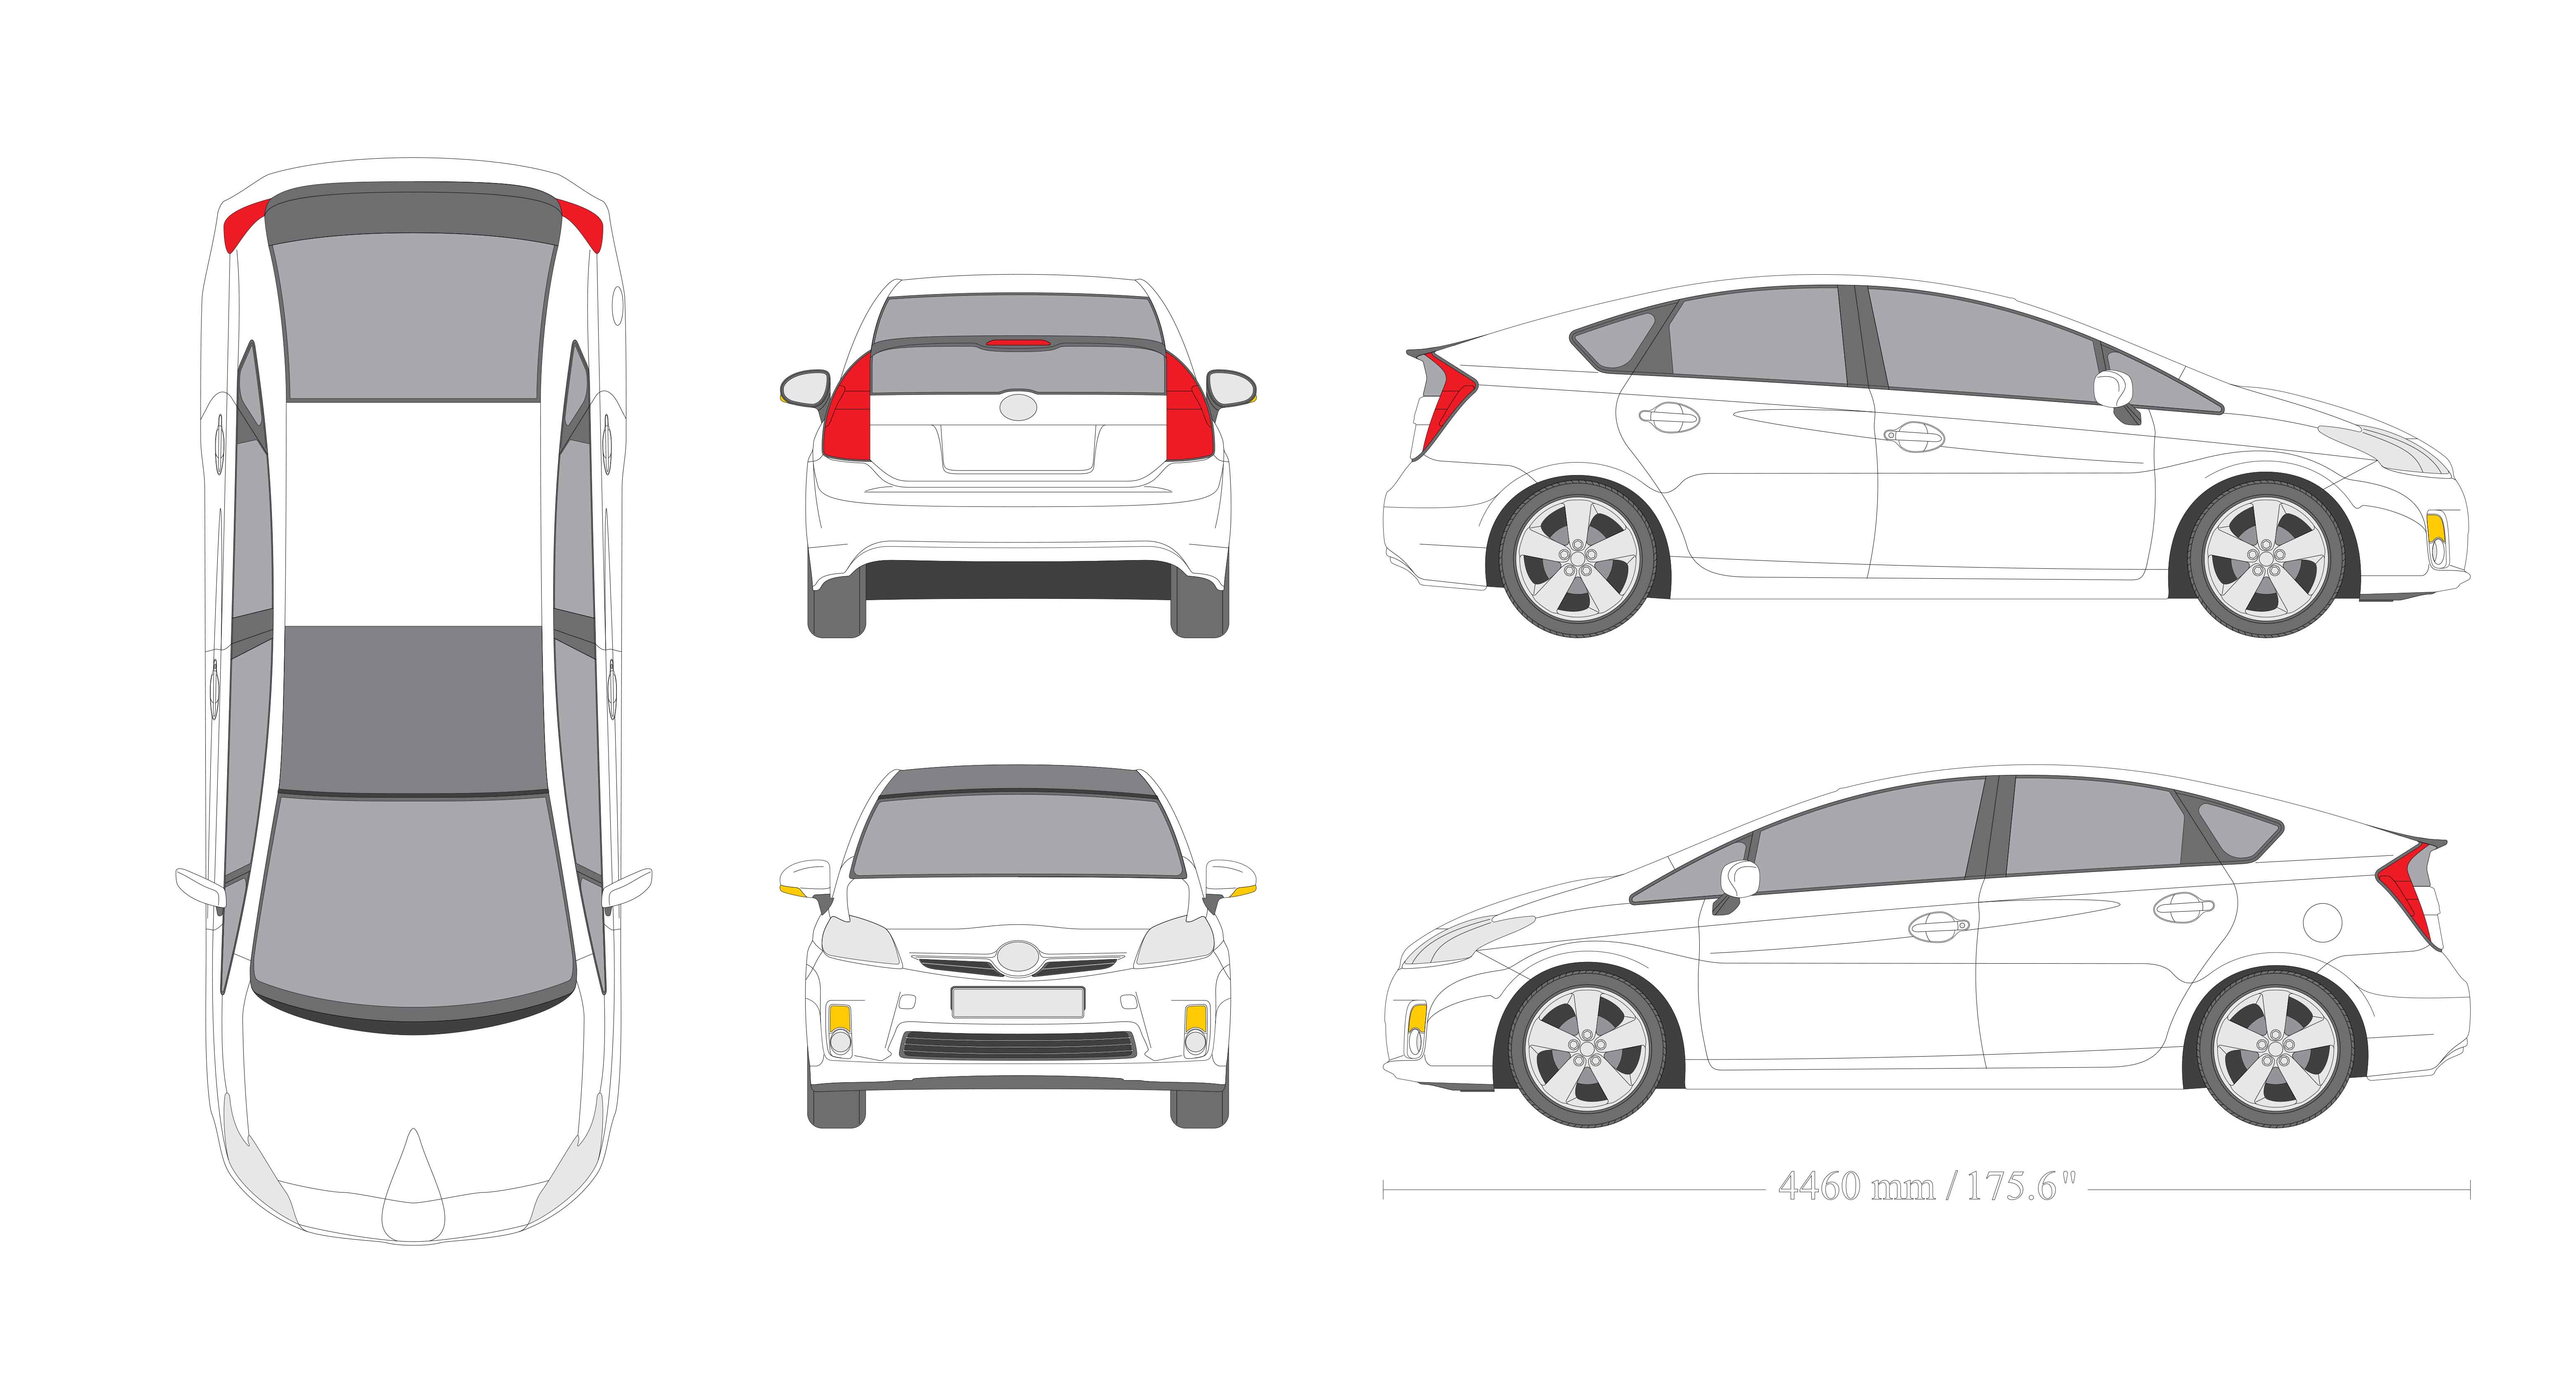 10 Car Wrap Design Templates Images Vehicle Wrap Design Templates